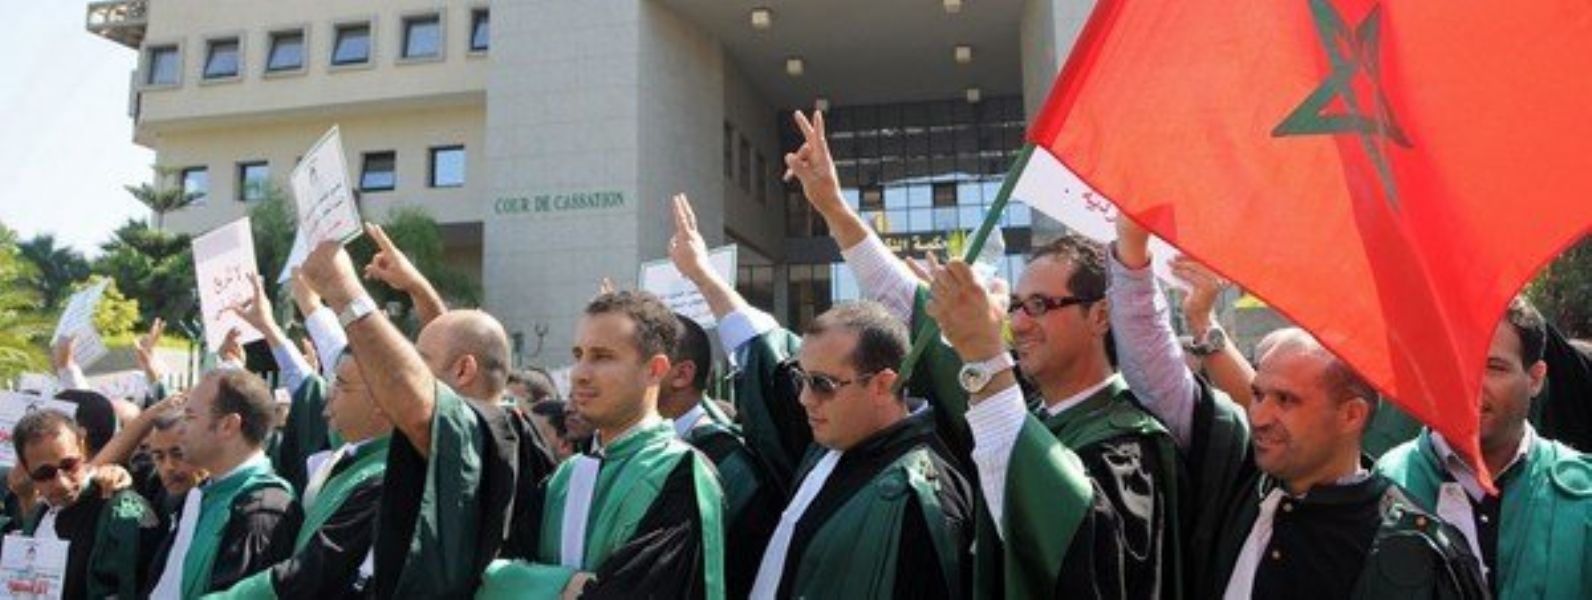 Magistrados marroques se manifiestan por la independencia judicial en Rabat